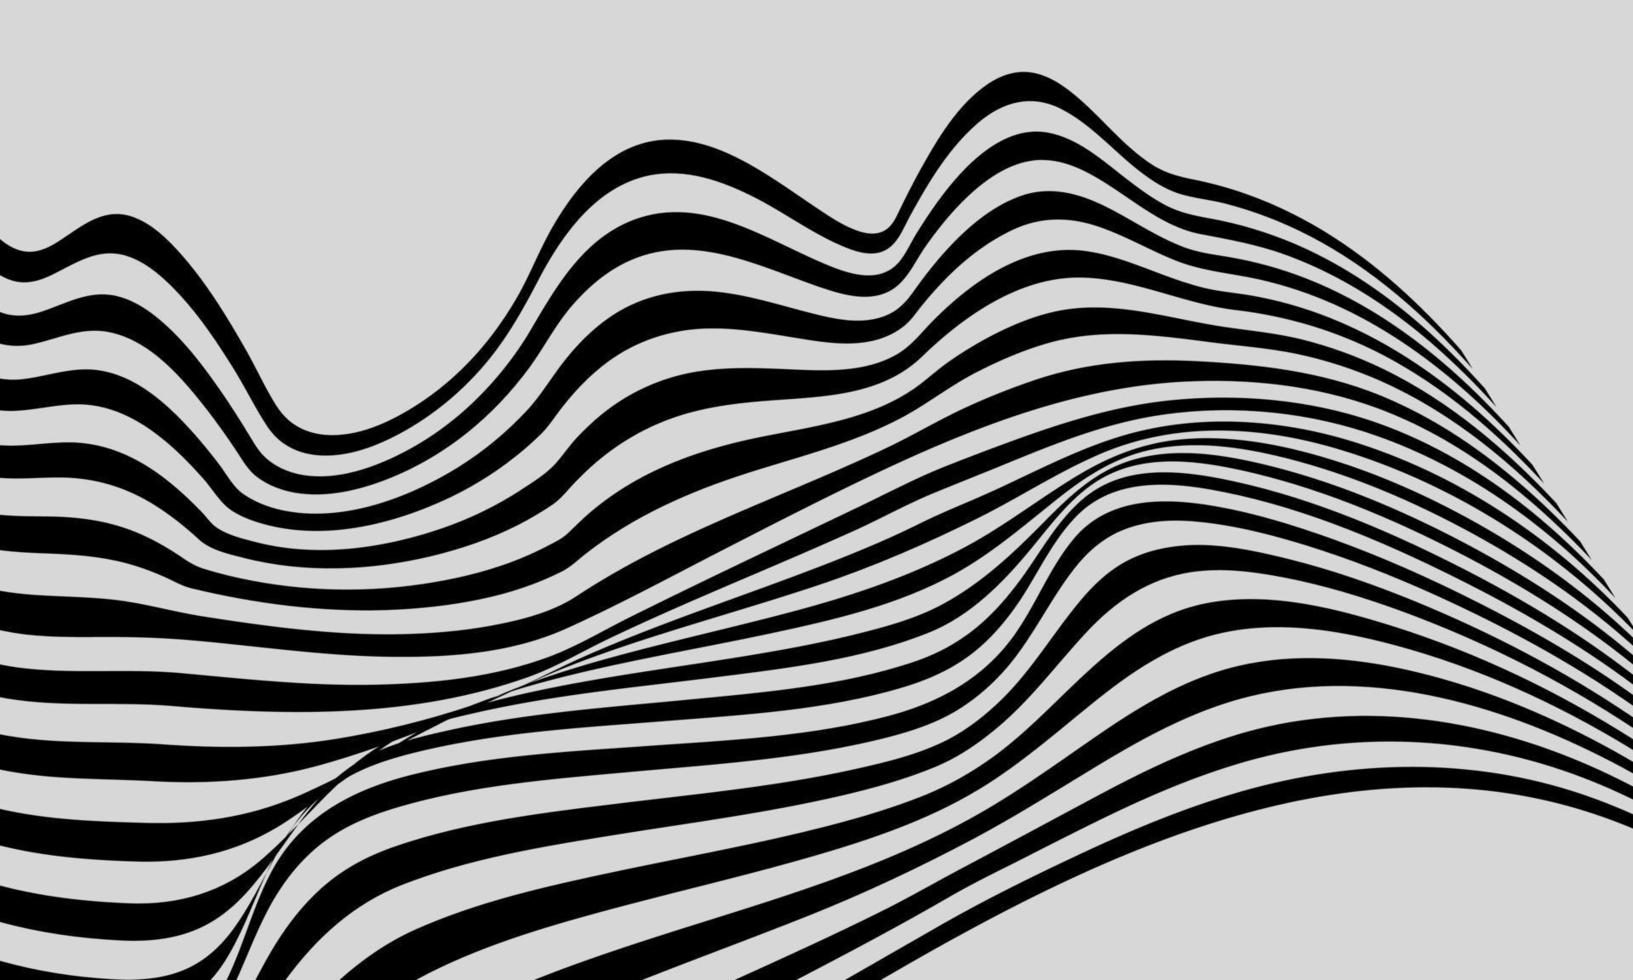 illusion d'optique créative abstraite vecteur ver géométrique concentrique